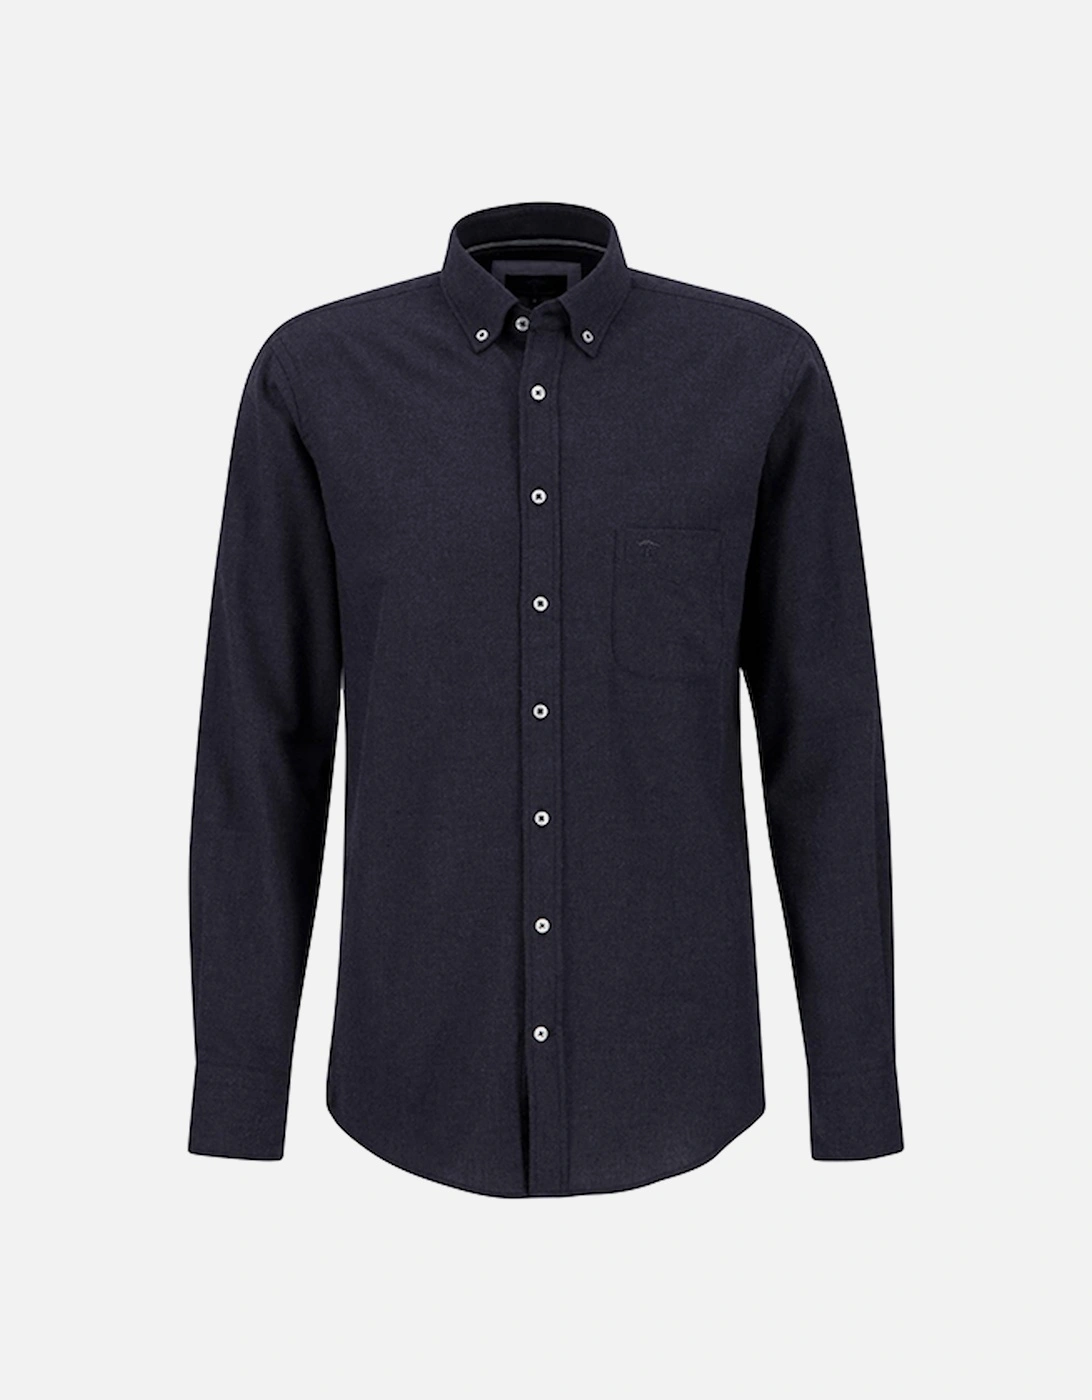 Men's Premium Flannel Shirt Navy, 3 of 2